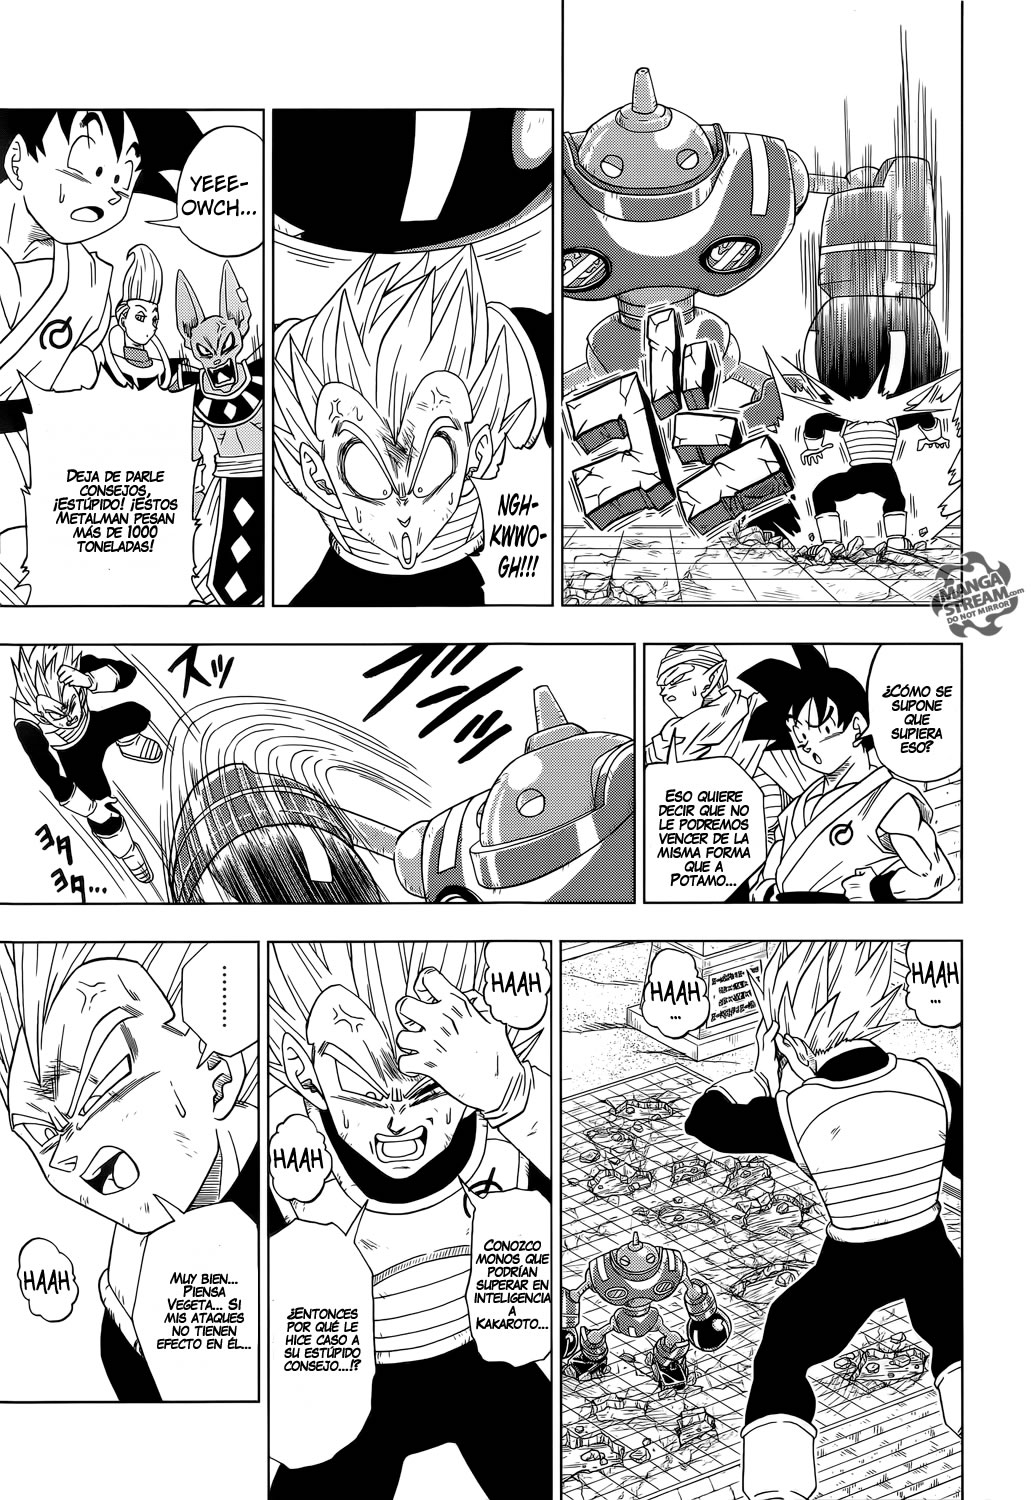 Blogg de Super Warioman: El potencial de Goku